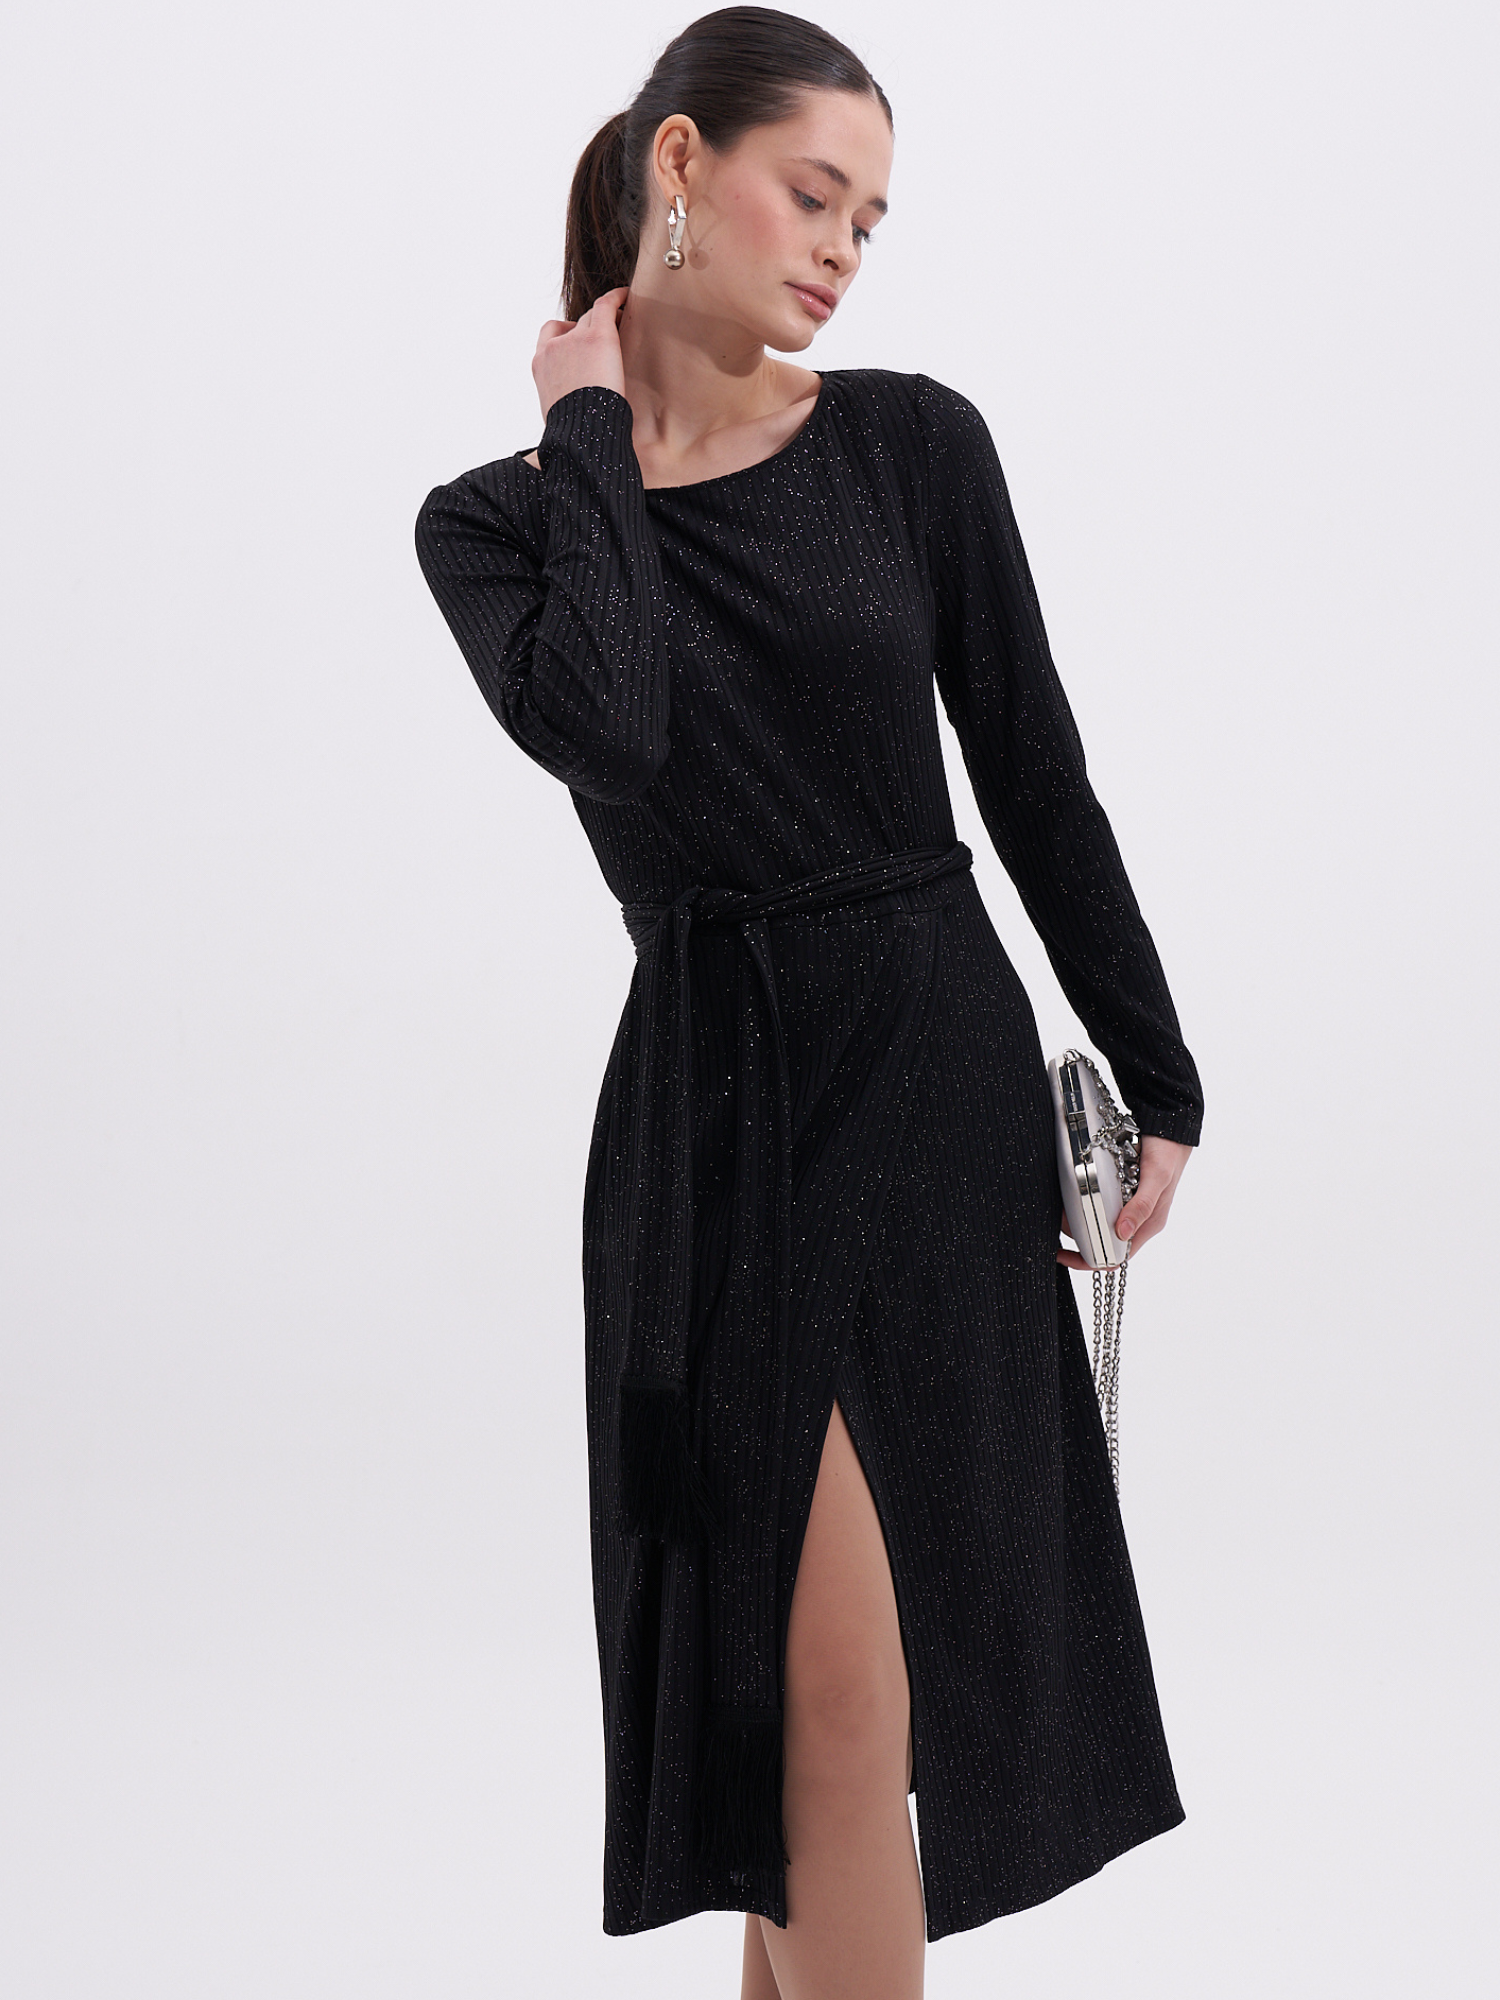 Платье женское EDGE ed090313 черное XL